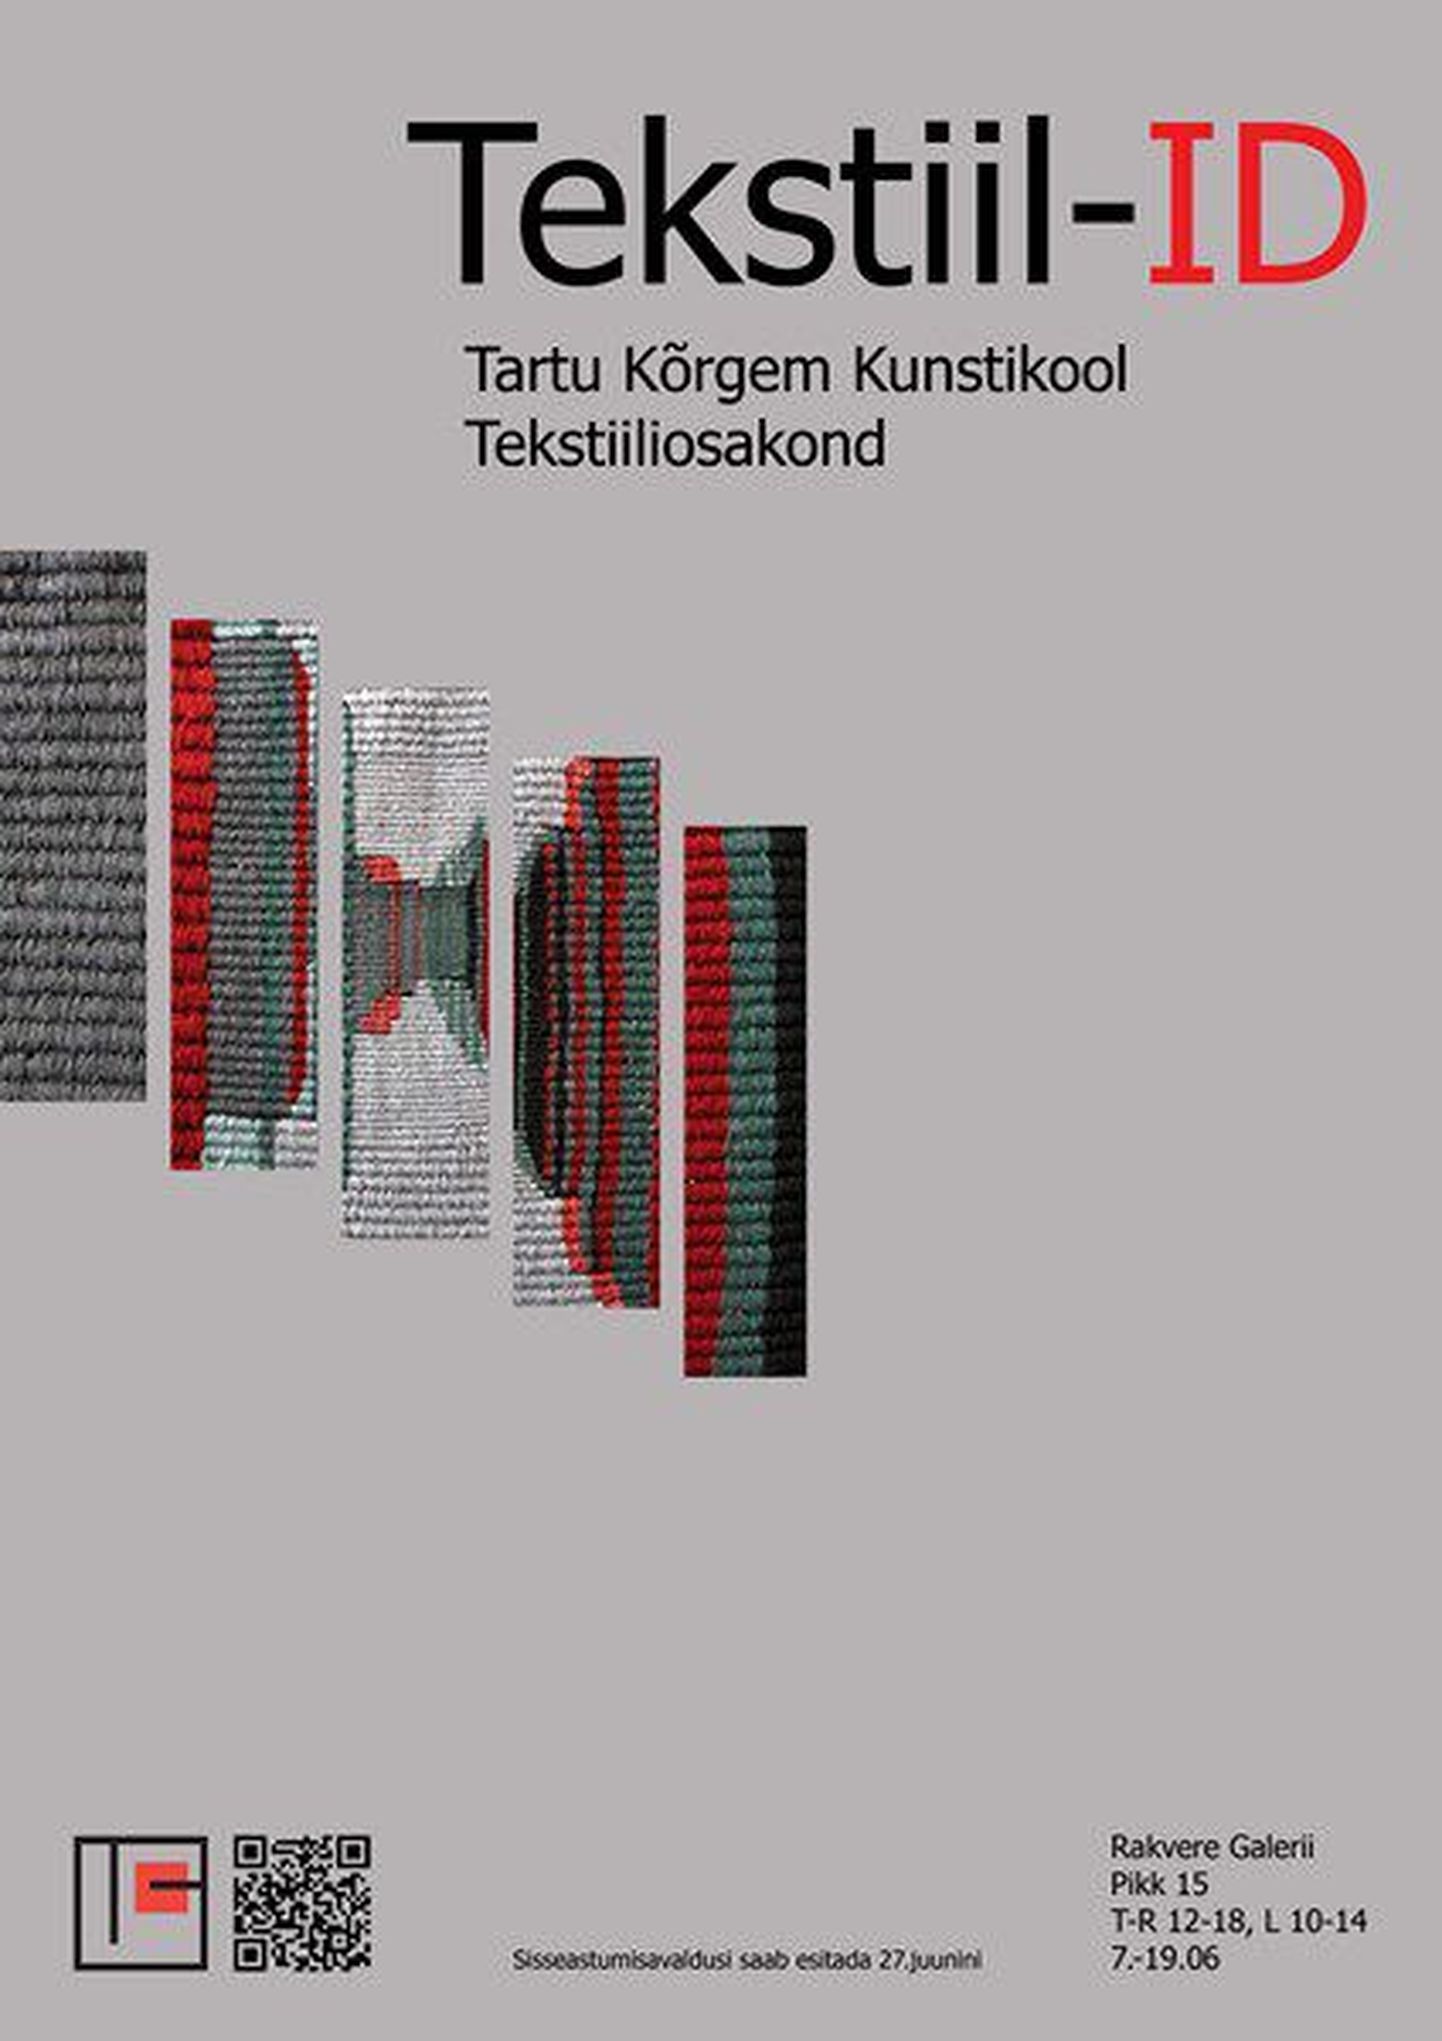 TKK tekstiiliosakonna näituse "Tekstiil-ID" plakat.